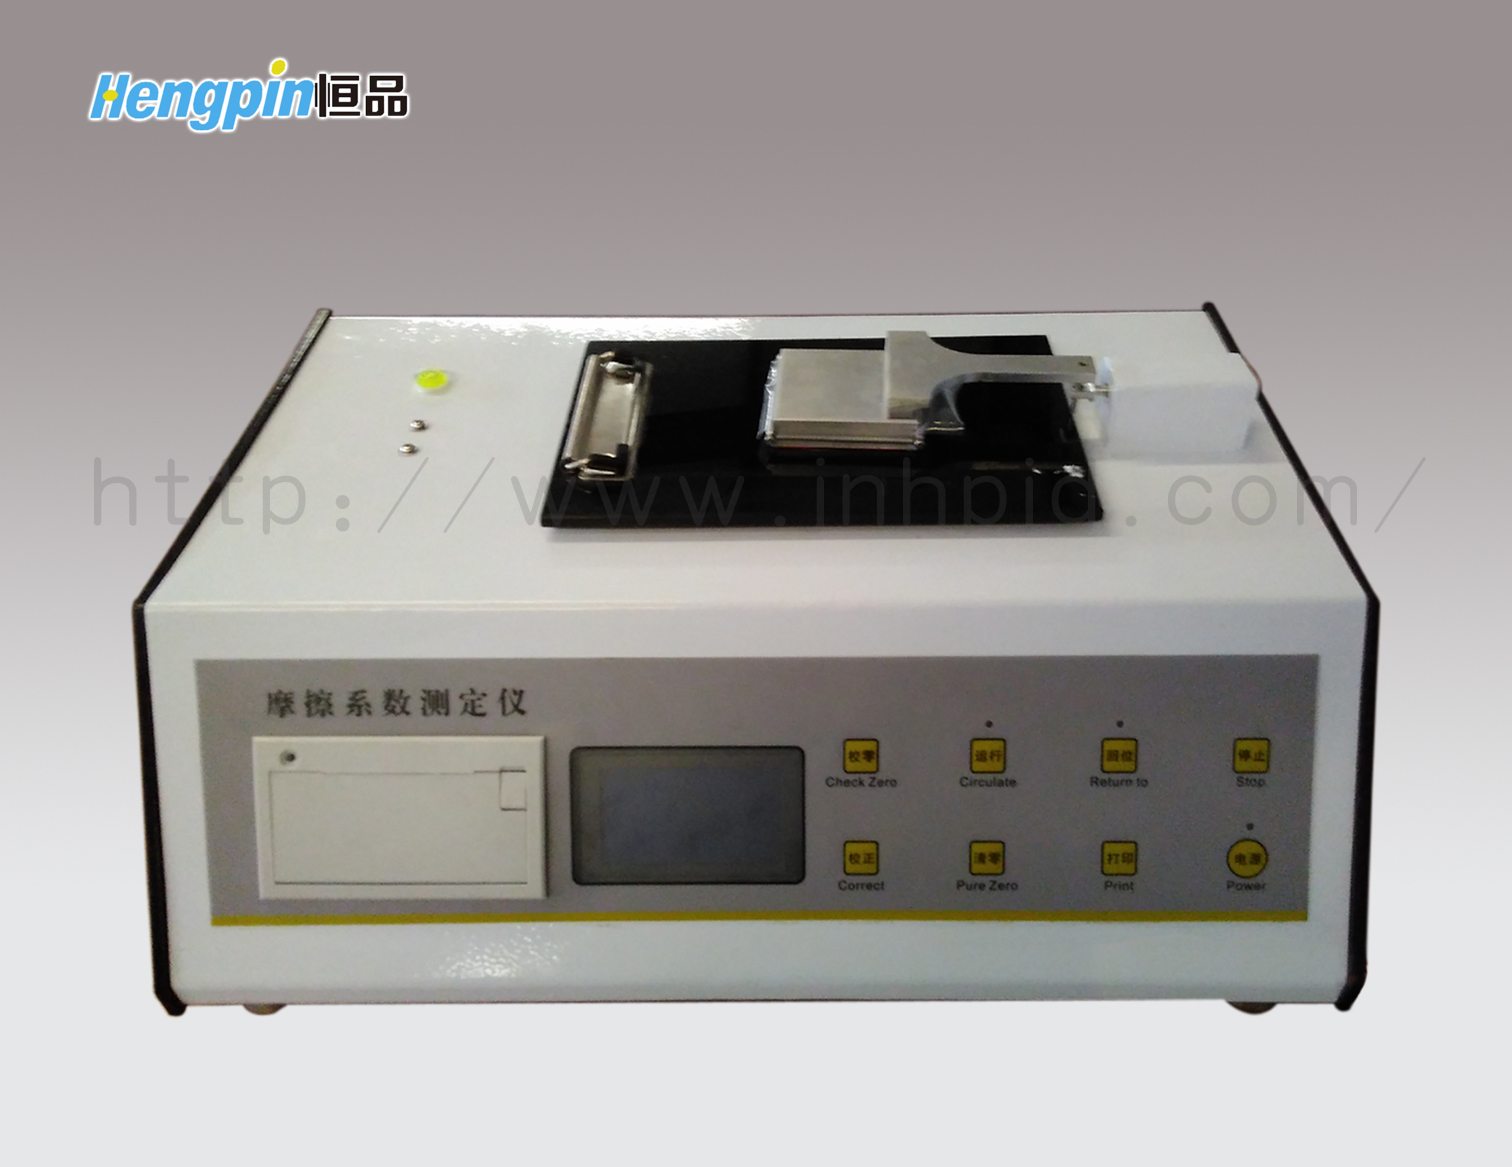 HP-MXD-02摩擦系数测定仪